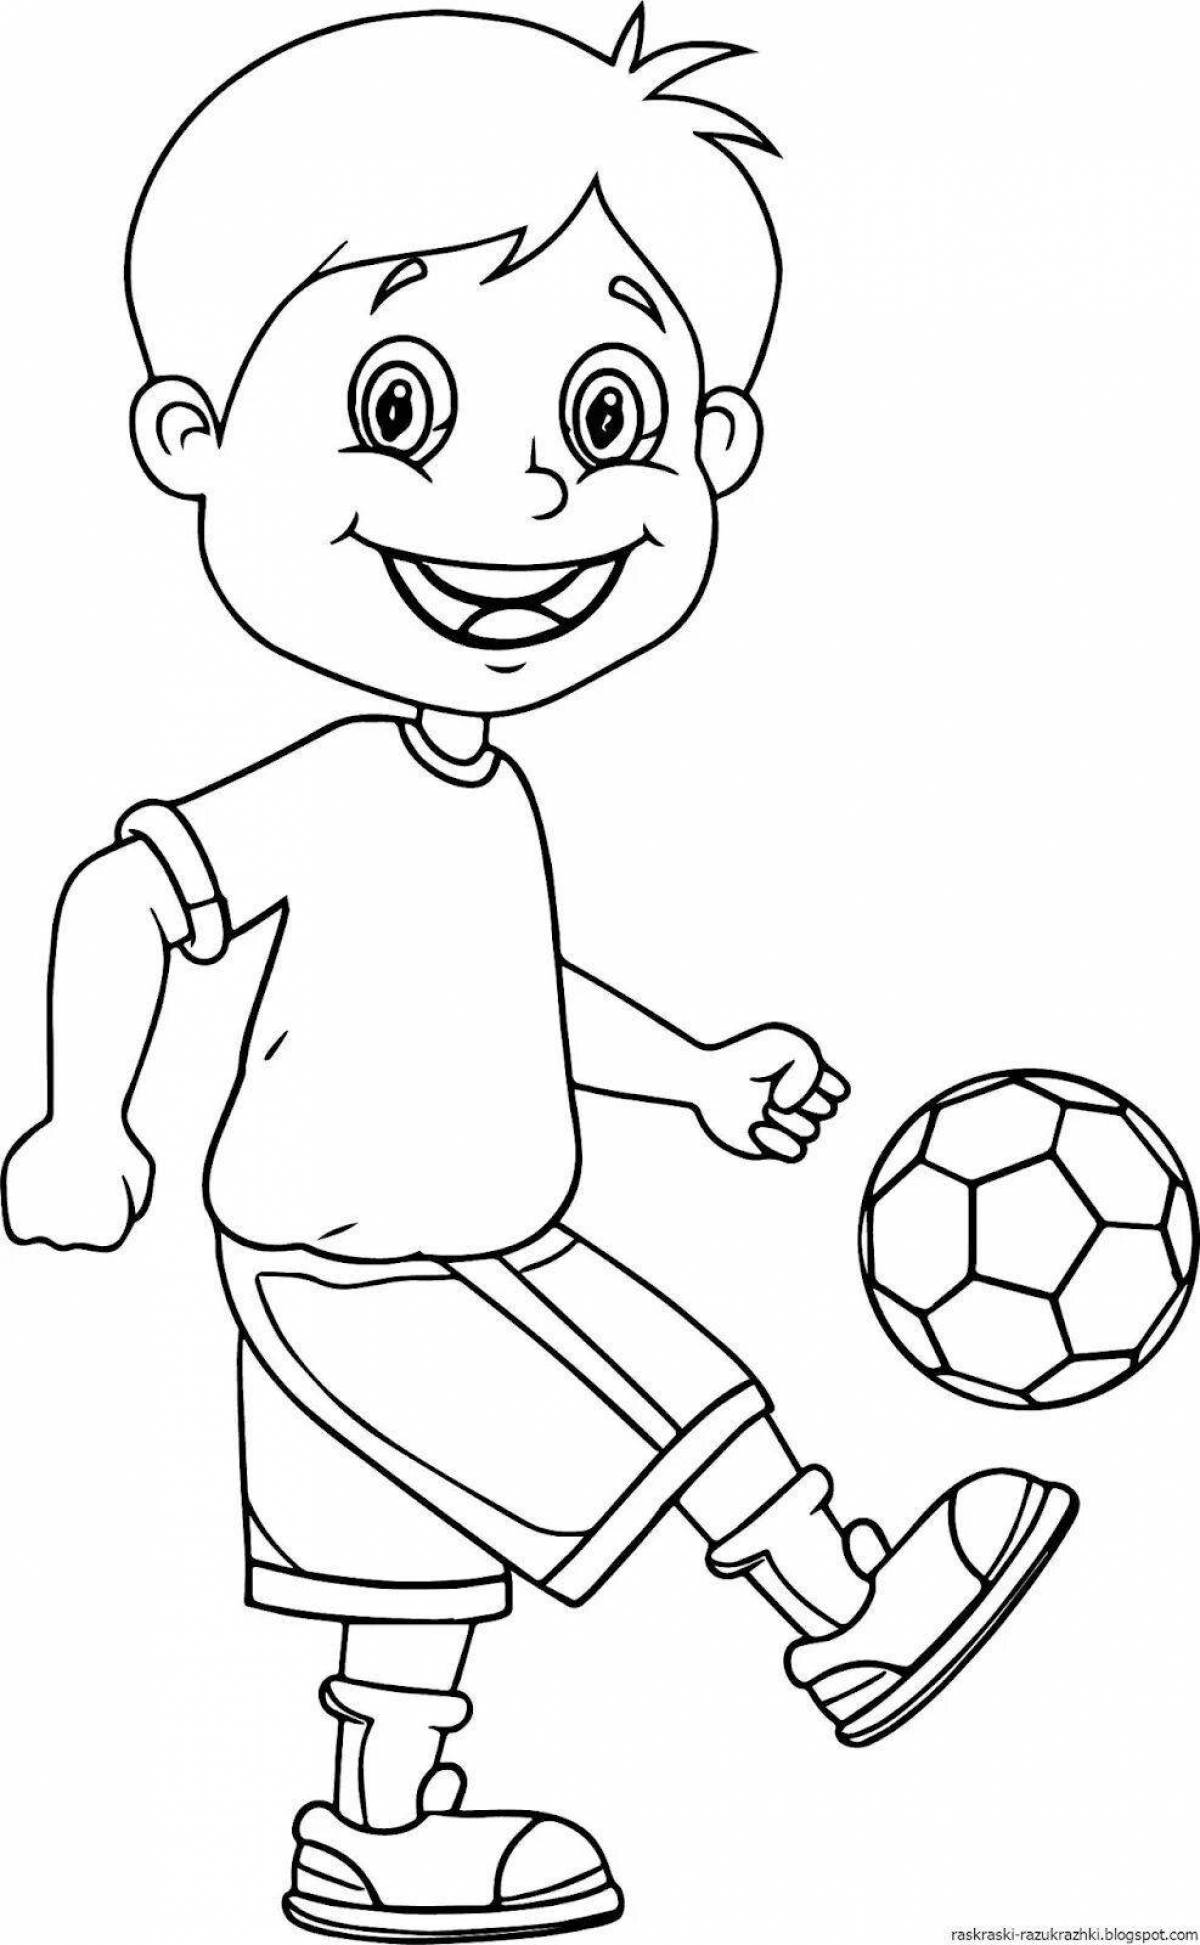 Динамичная раскраска футболиста для детей